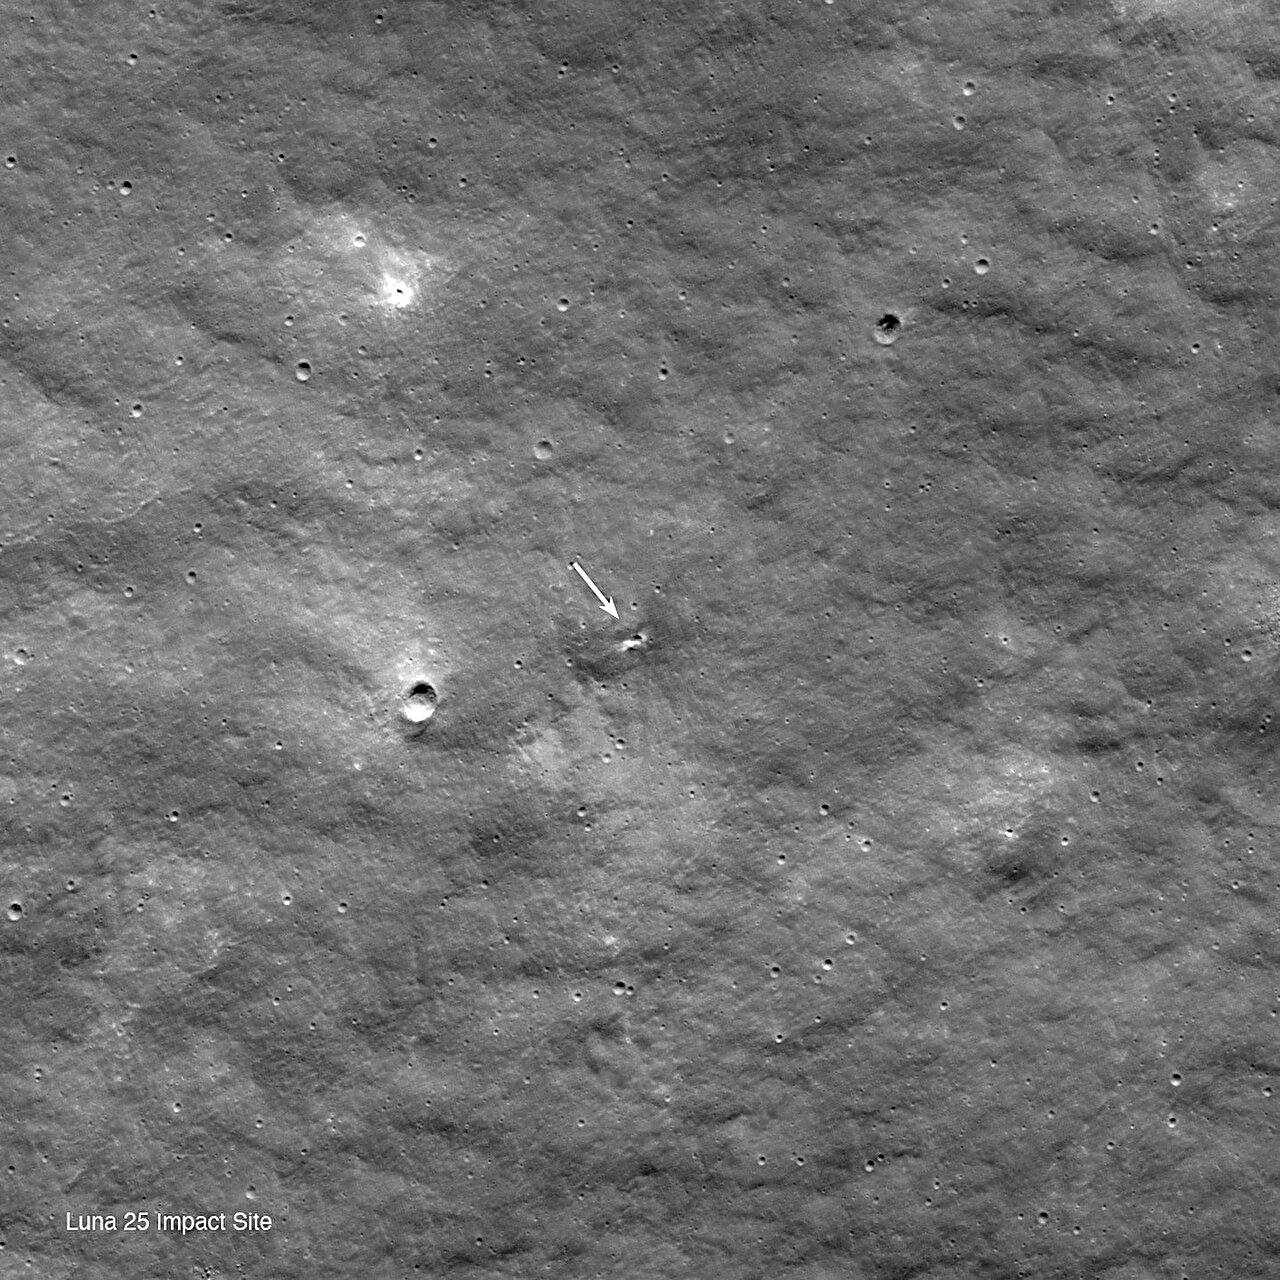 NASA’s LRO observeert de krater die waarschijnlijk is veroorzaakt door de inslag van Luna 25